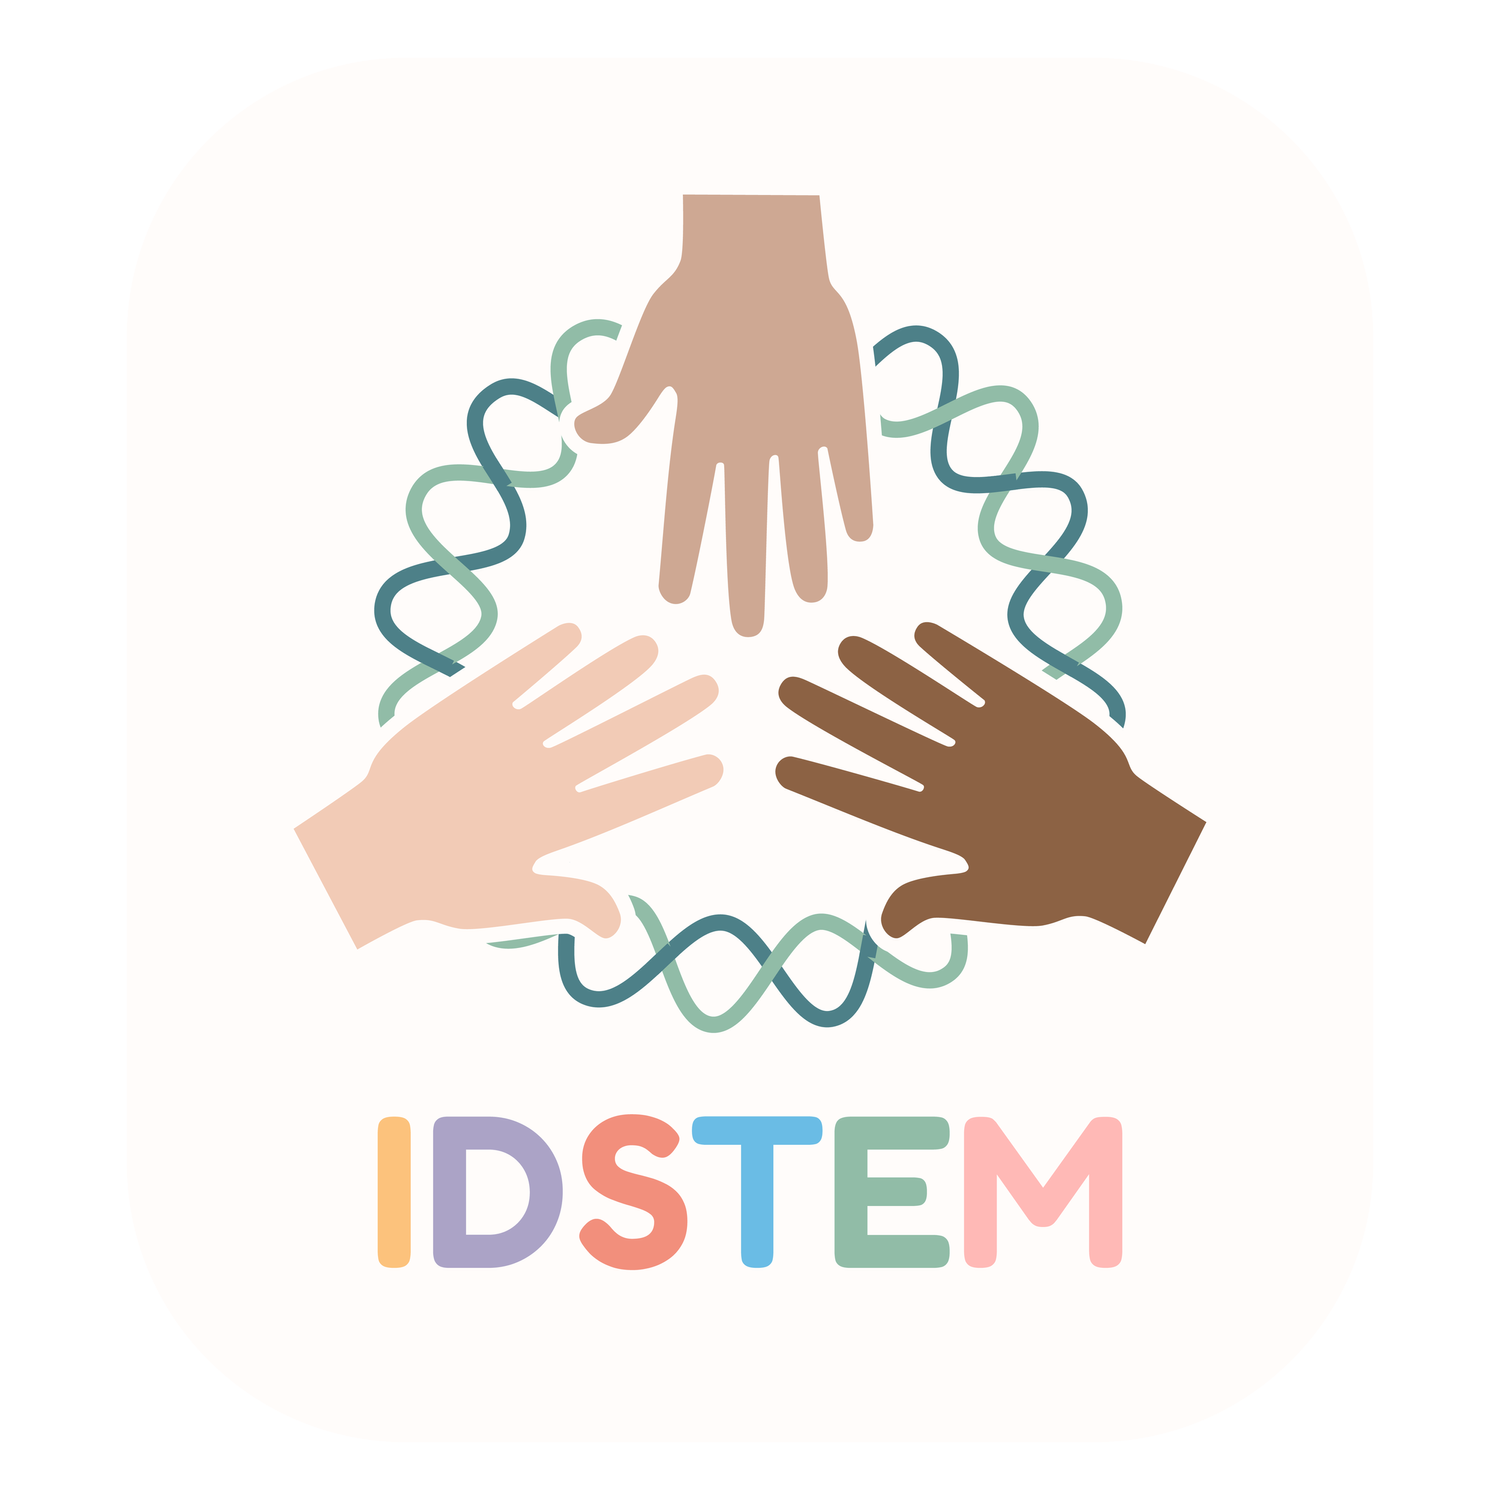 Inspiring Diversity in STEM (IDSTEM)